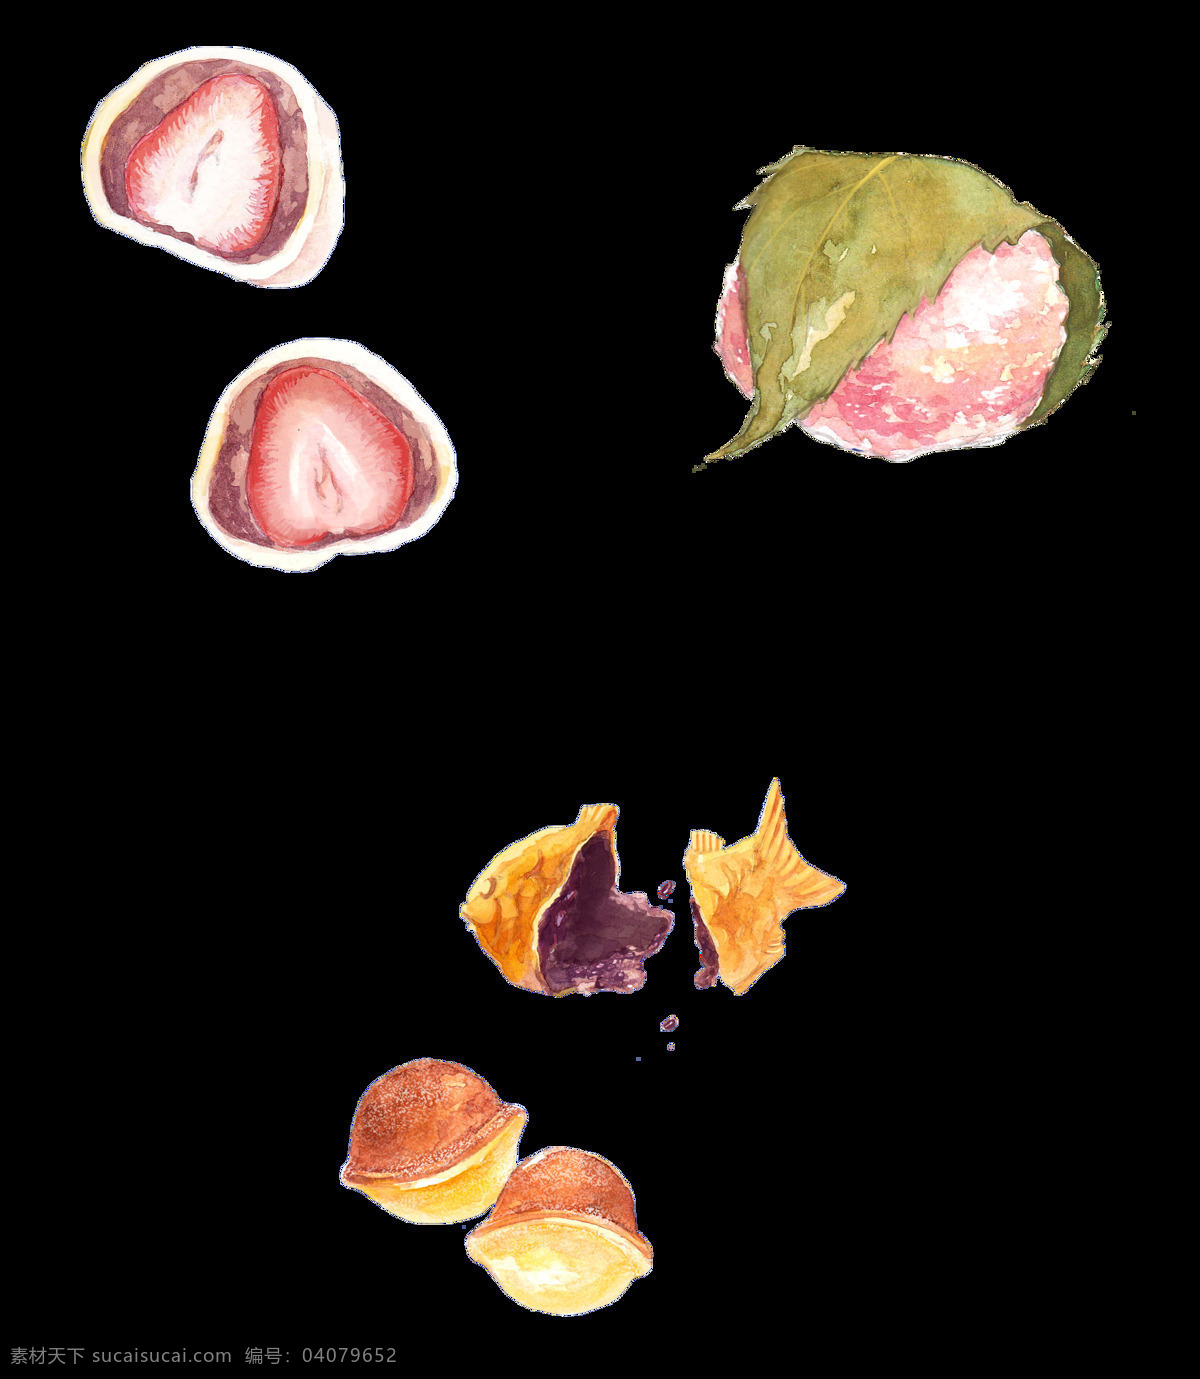 日式点心 日本 日式 和风 食物 点心 甜点 和菓子 草莓大福 鲷鱼烧 绘画书法 文化艺术